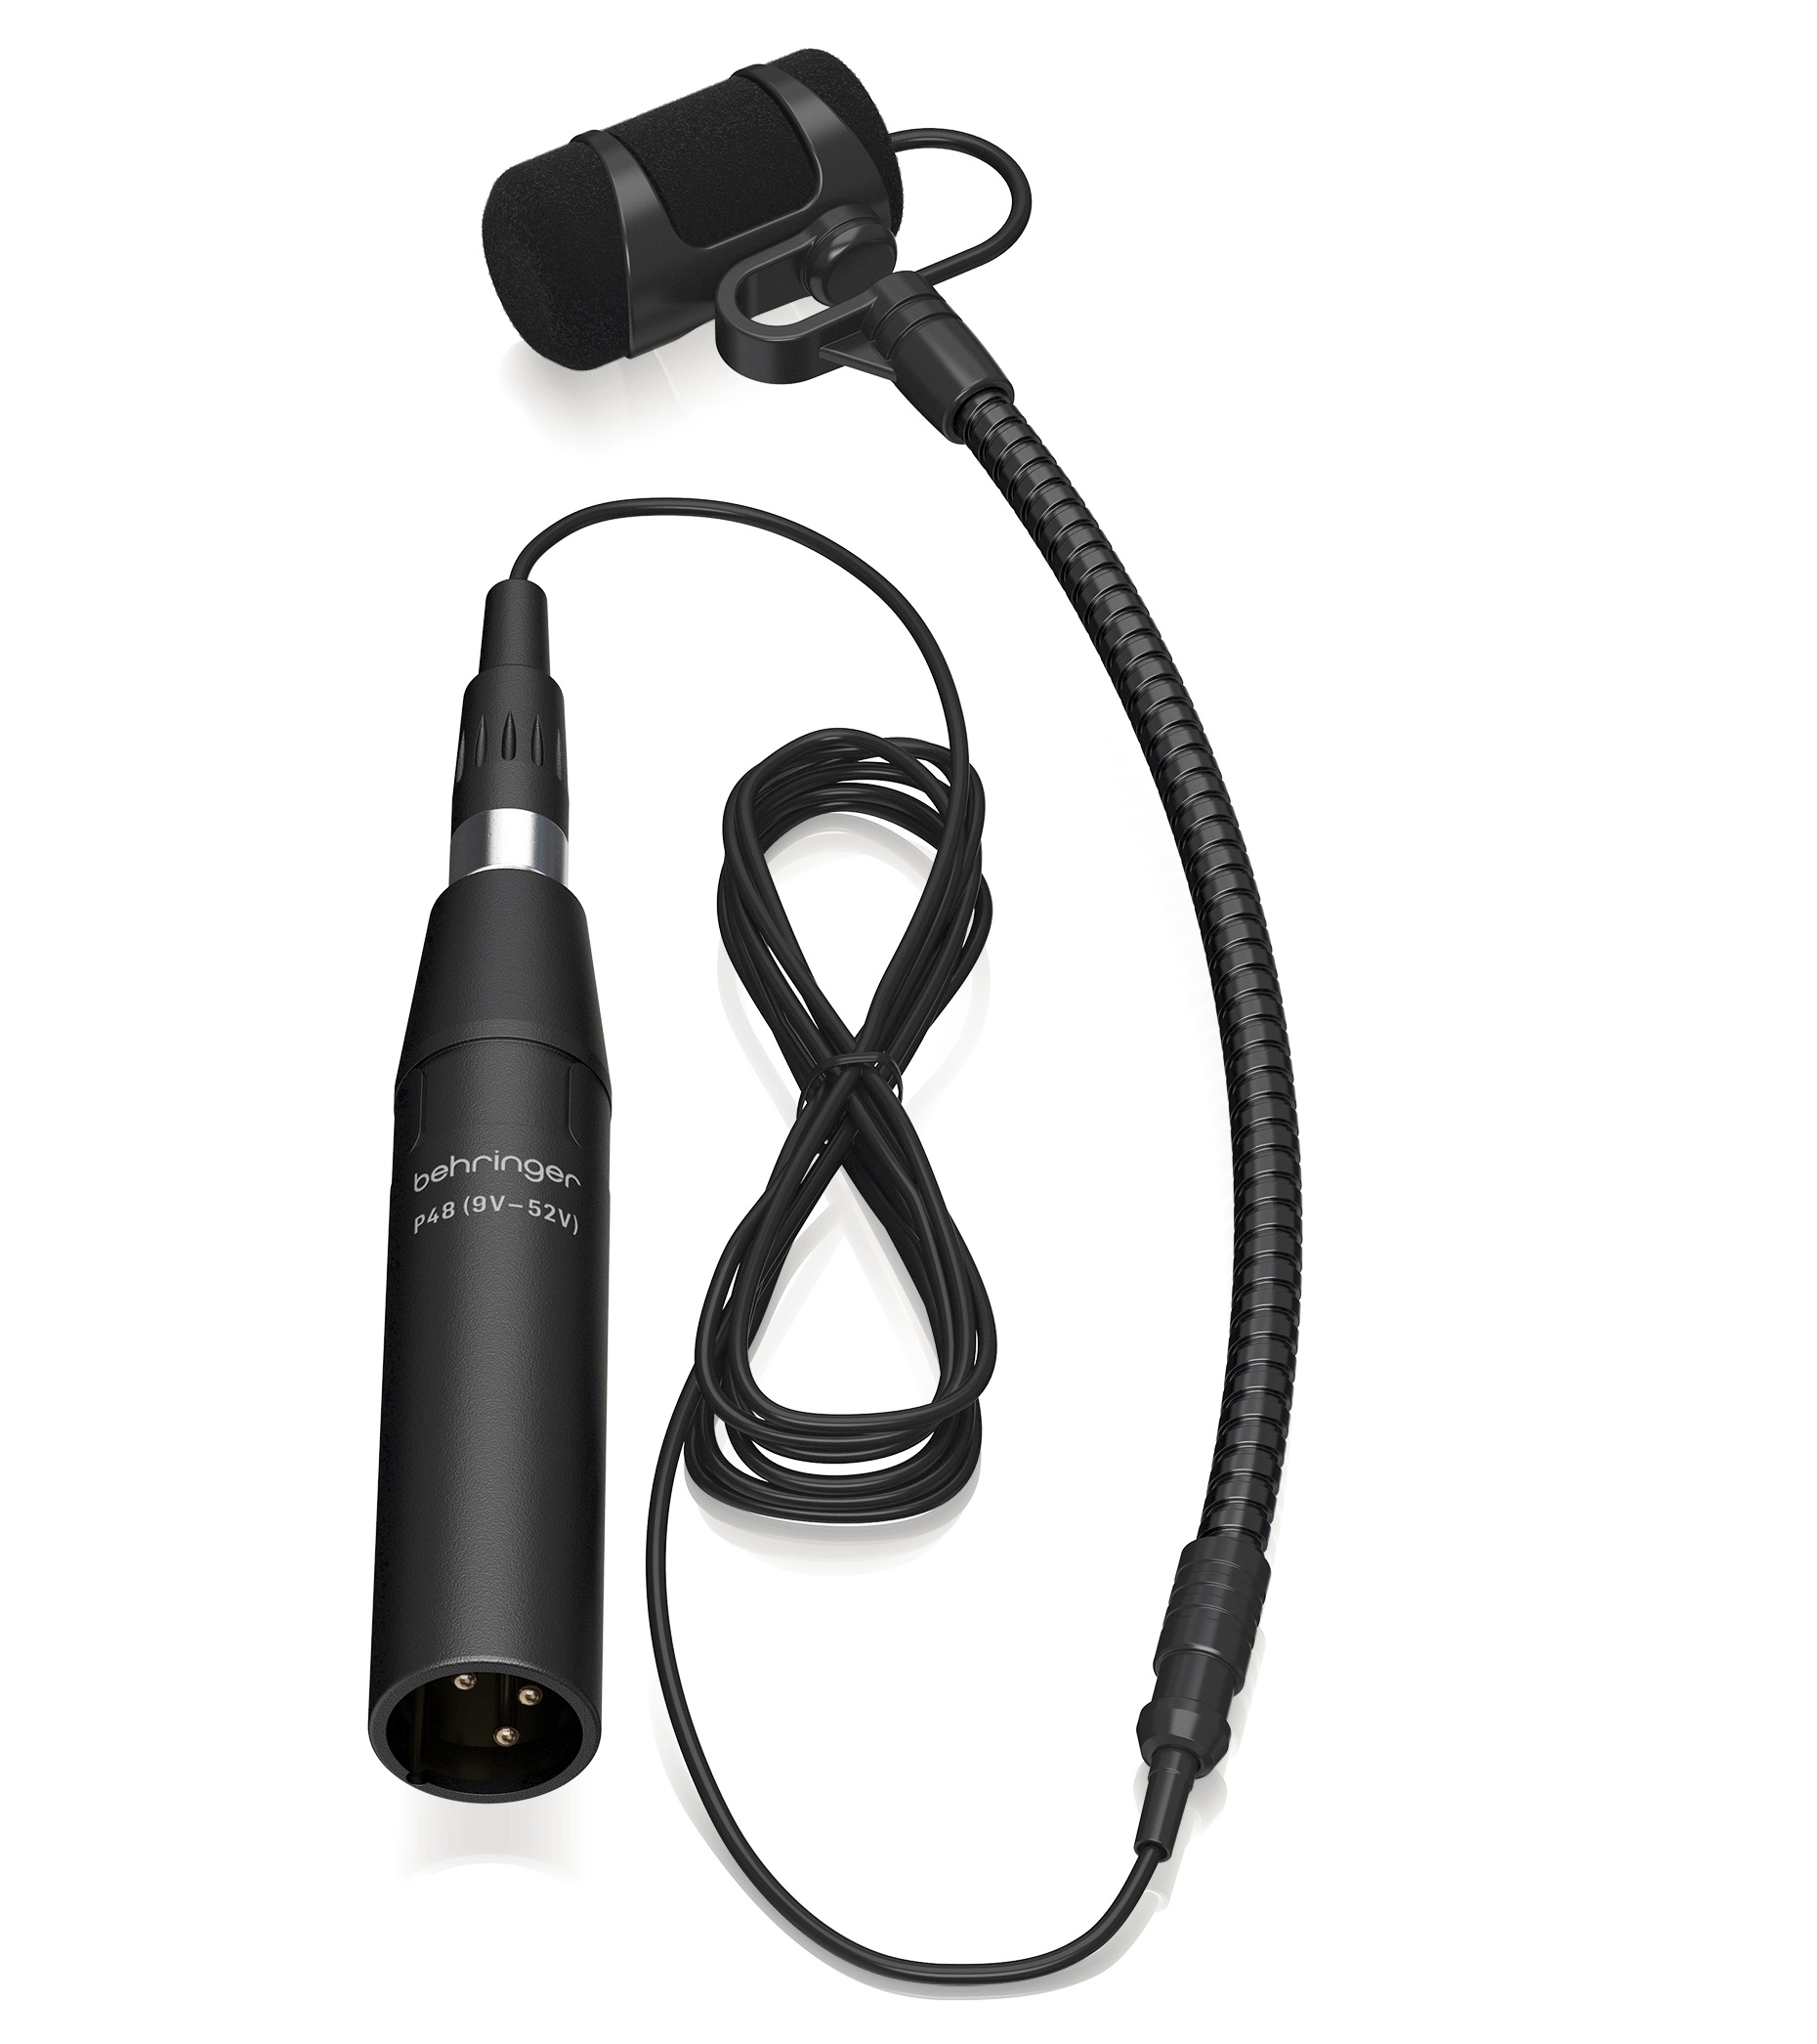 Инструментальные микрофоны Behringer CB 100 мини usb проводной конденсаторный микрофон микрофон с мини штативом подвеска поп фильтр